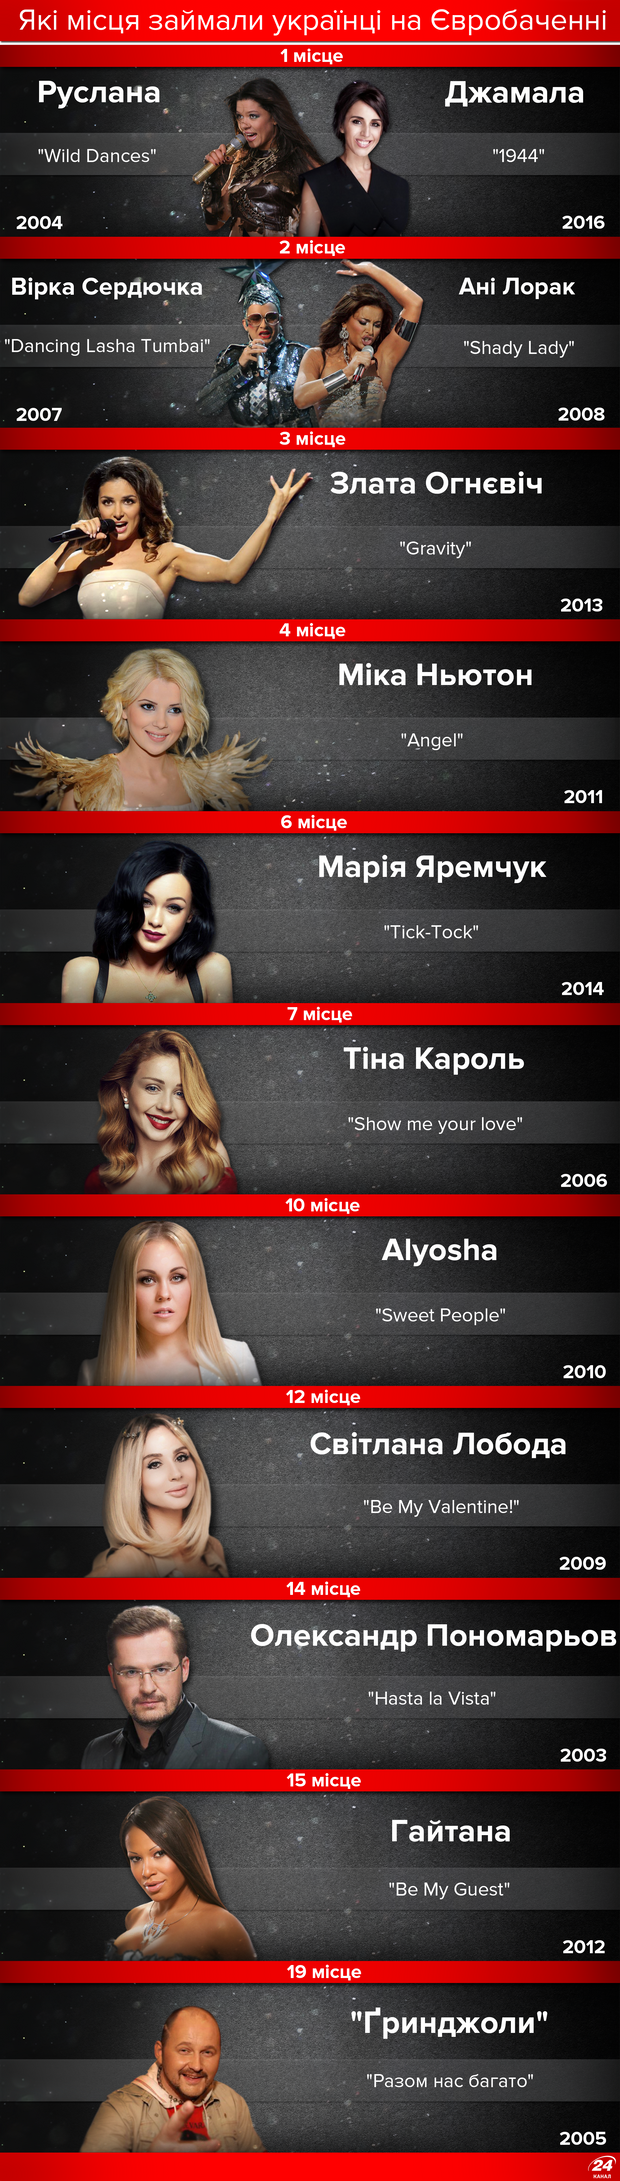 Україна на Євробаченні: інфографіка